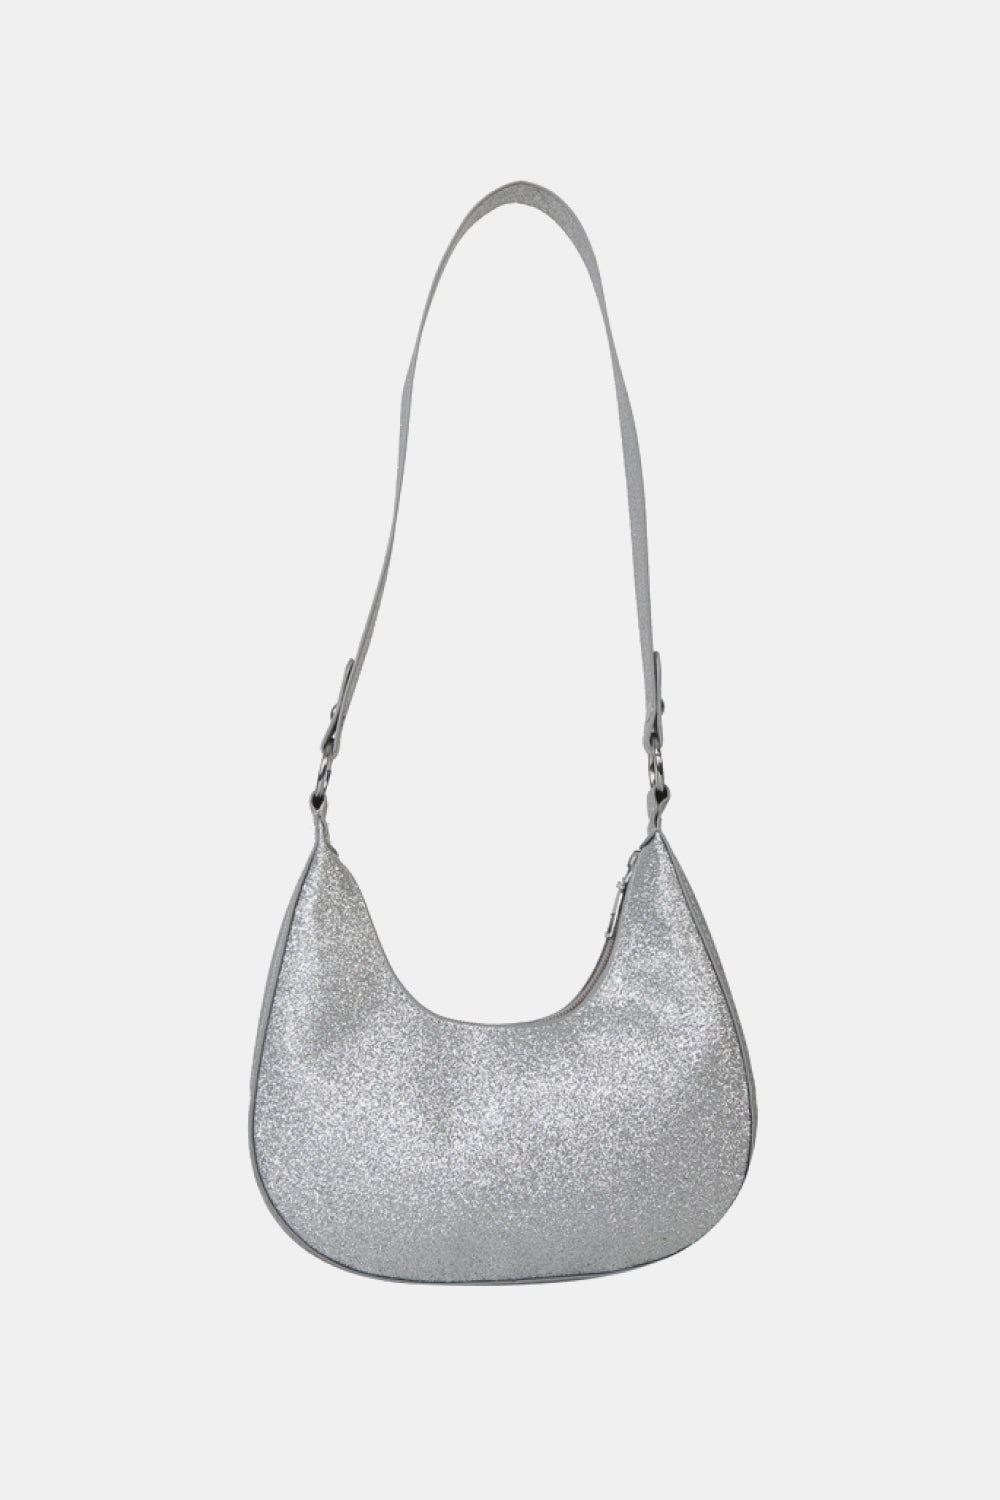 Littledesire Sequins Glitter Crossbody Sling Chain Bag - 8 Inch